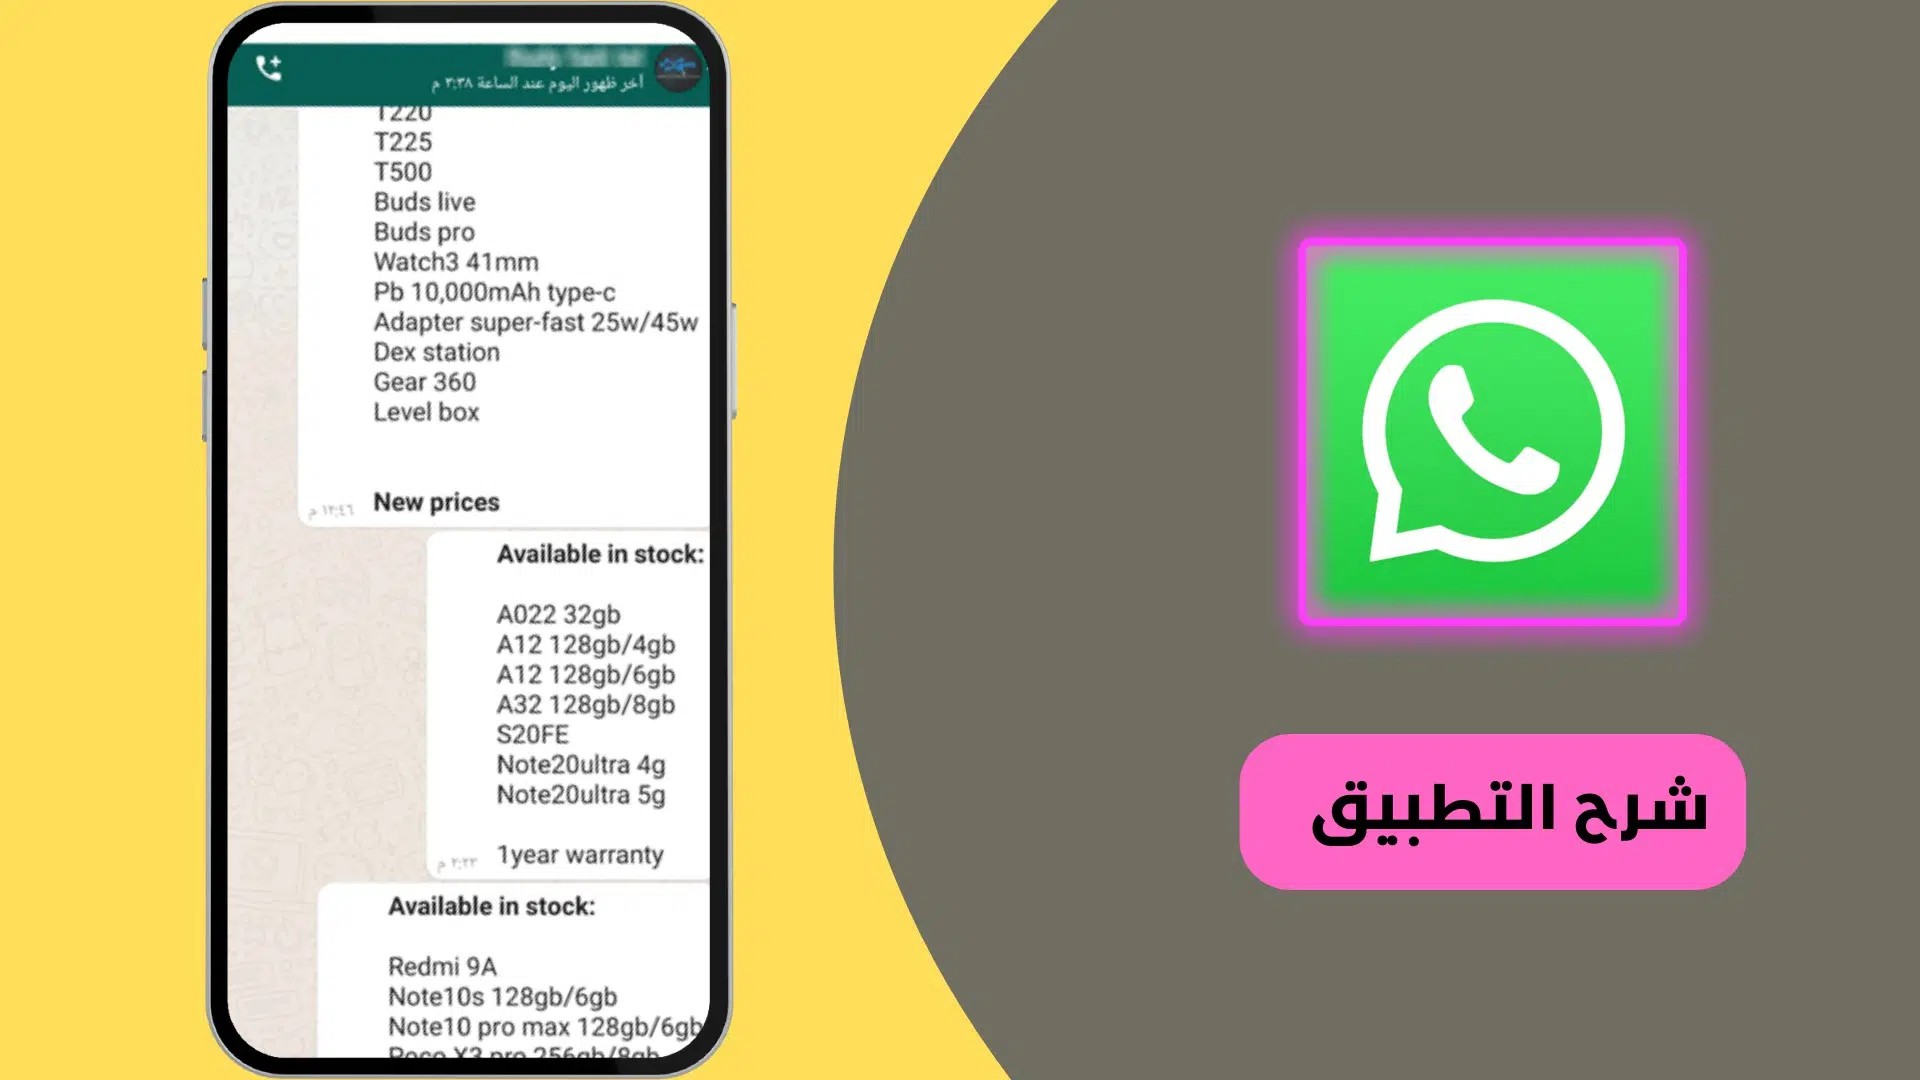 تنزيل الواتس اب الاخضر الاصلي القديم Whatsapp APK 2022